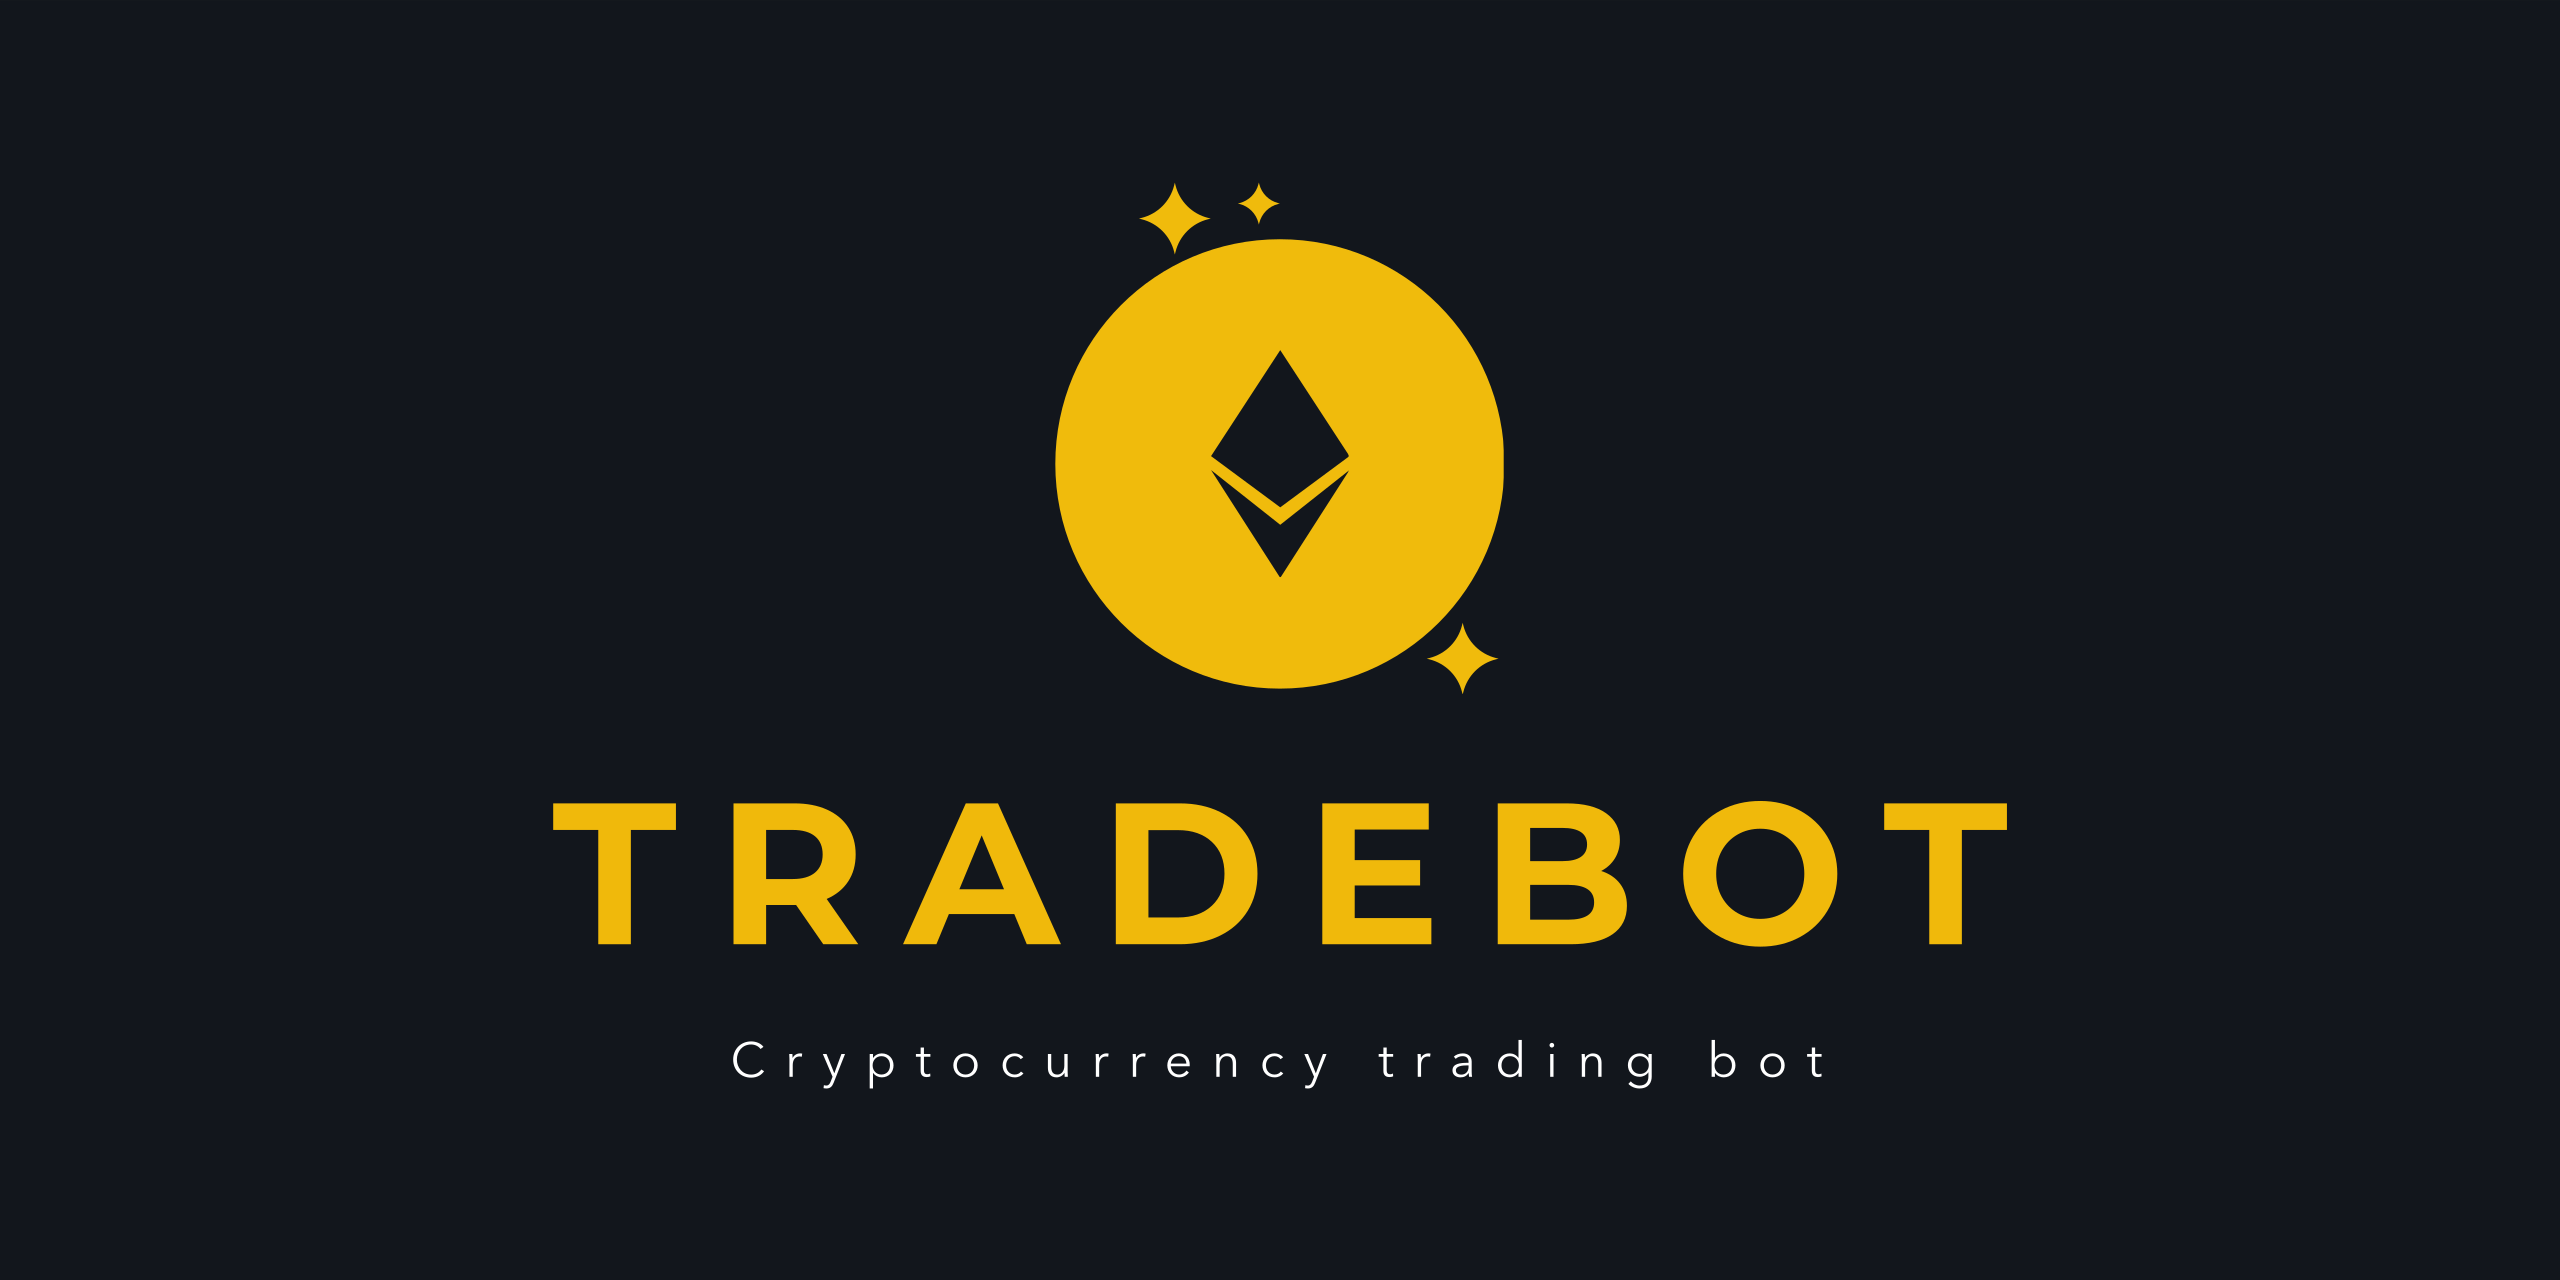 TradeBot